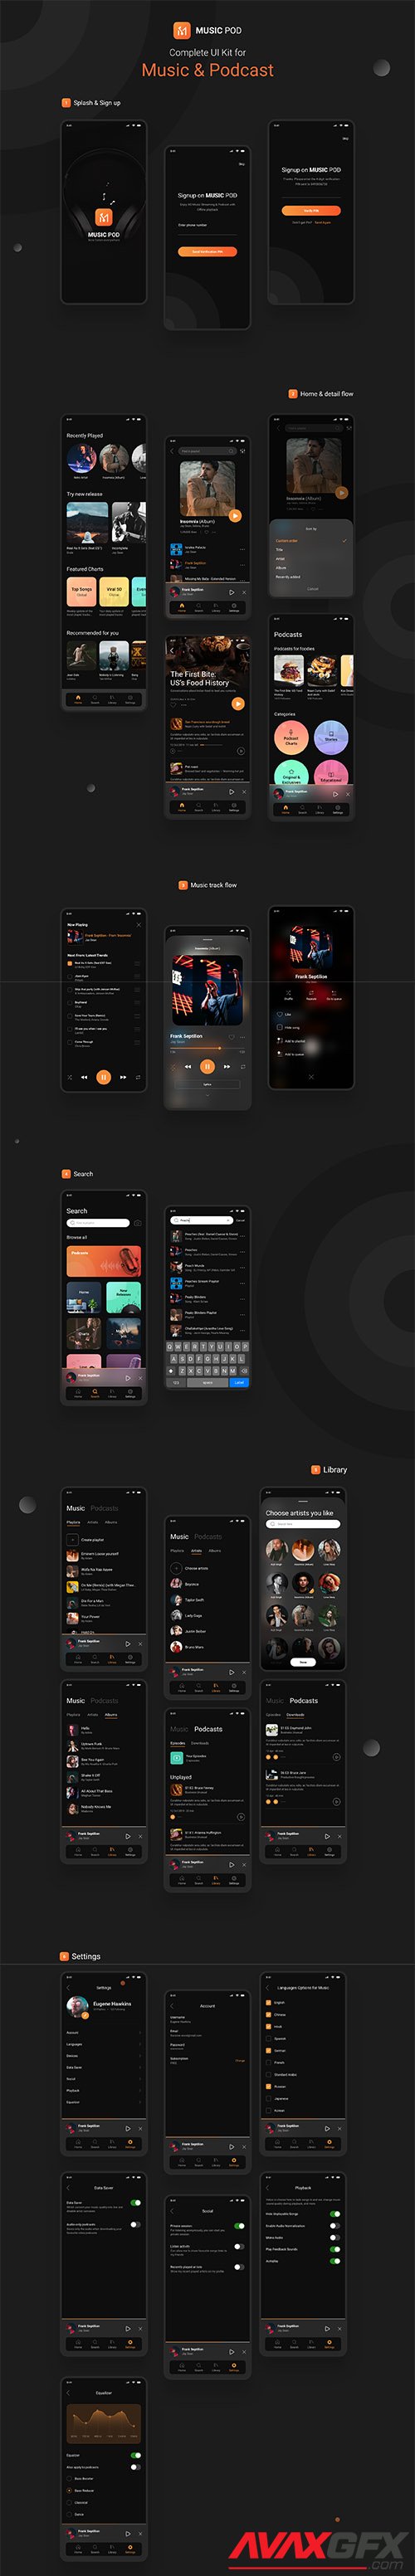 MusicPod App - Complete UI Kit